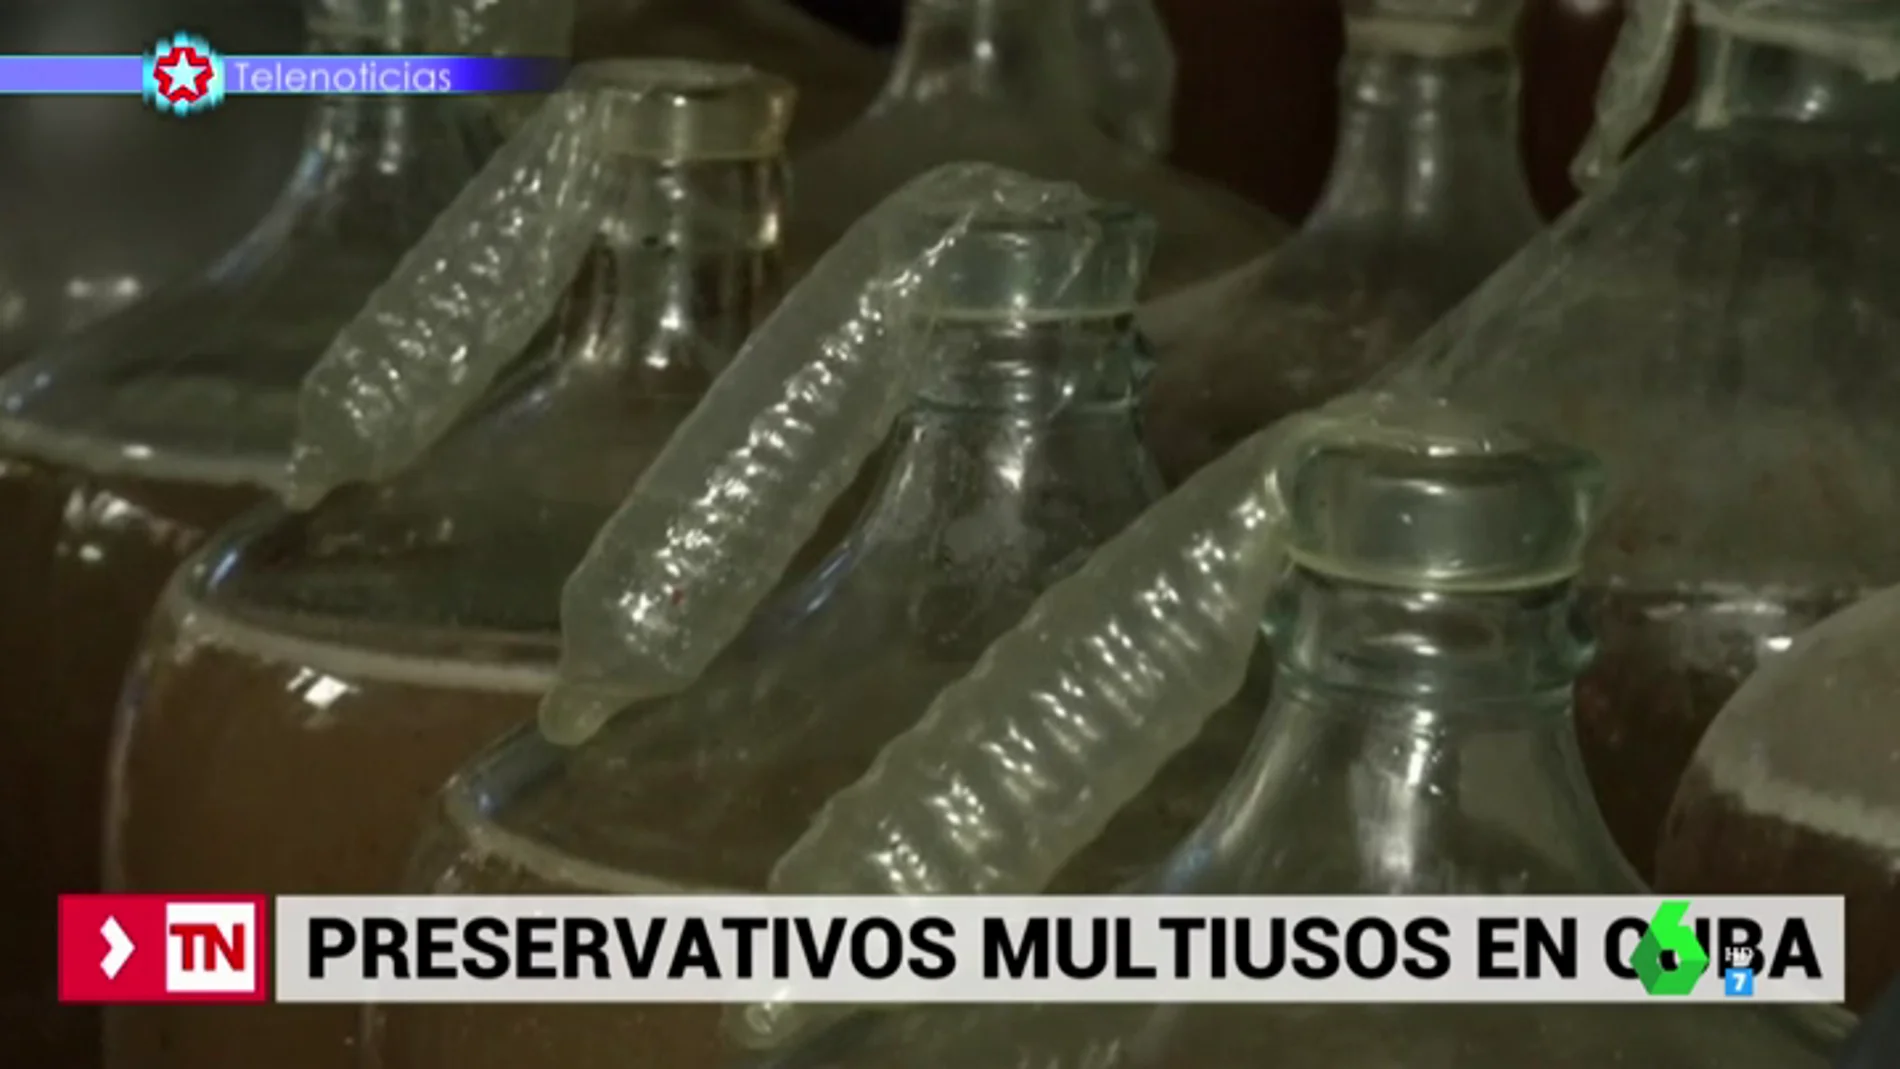 Los preservativos tienen innumerables usos en Cuba